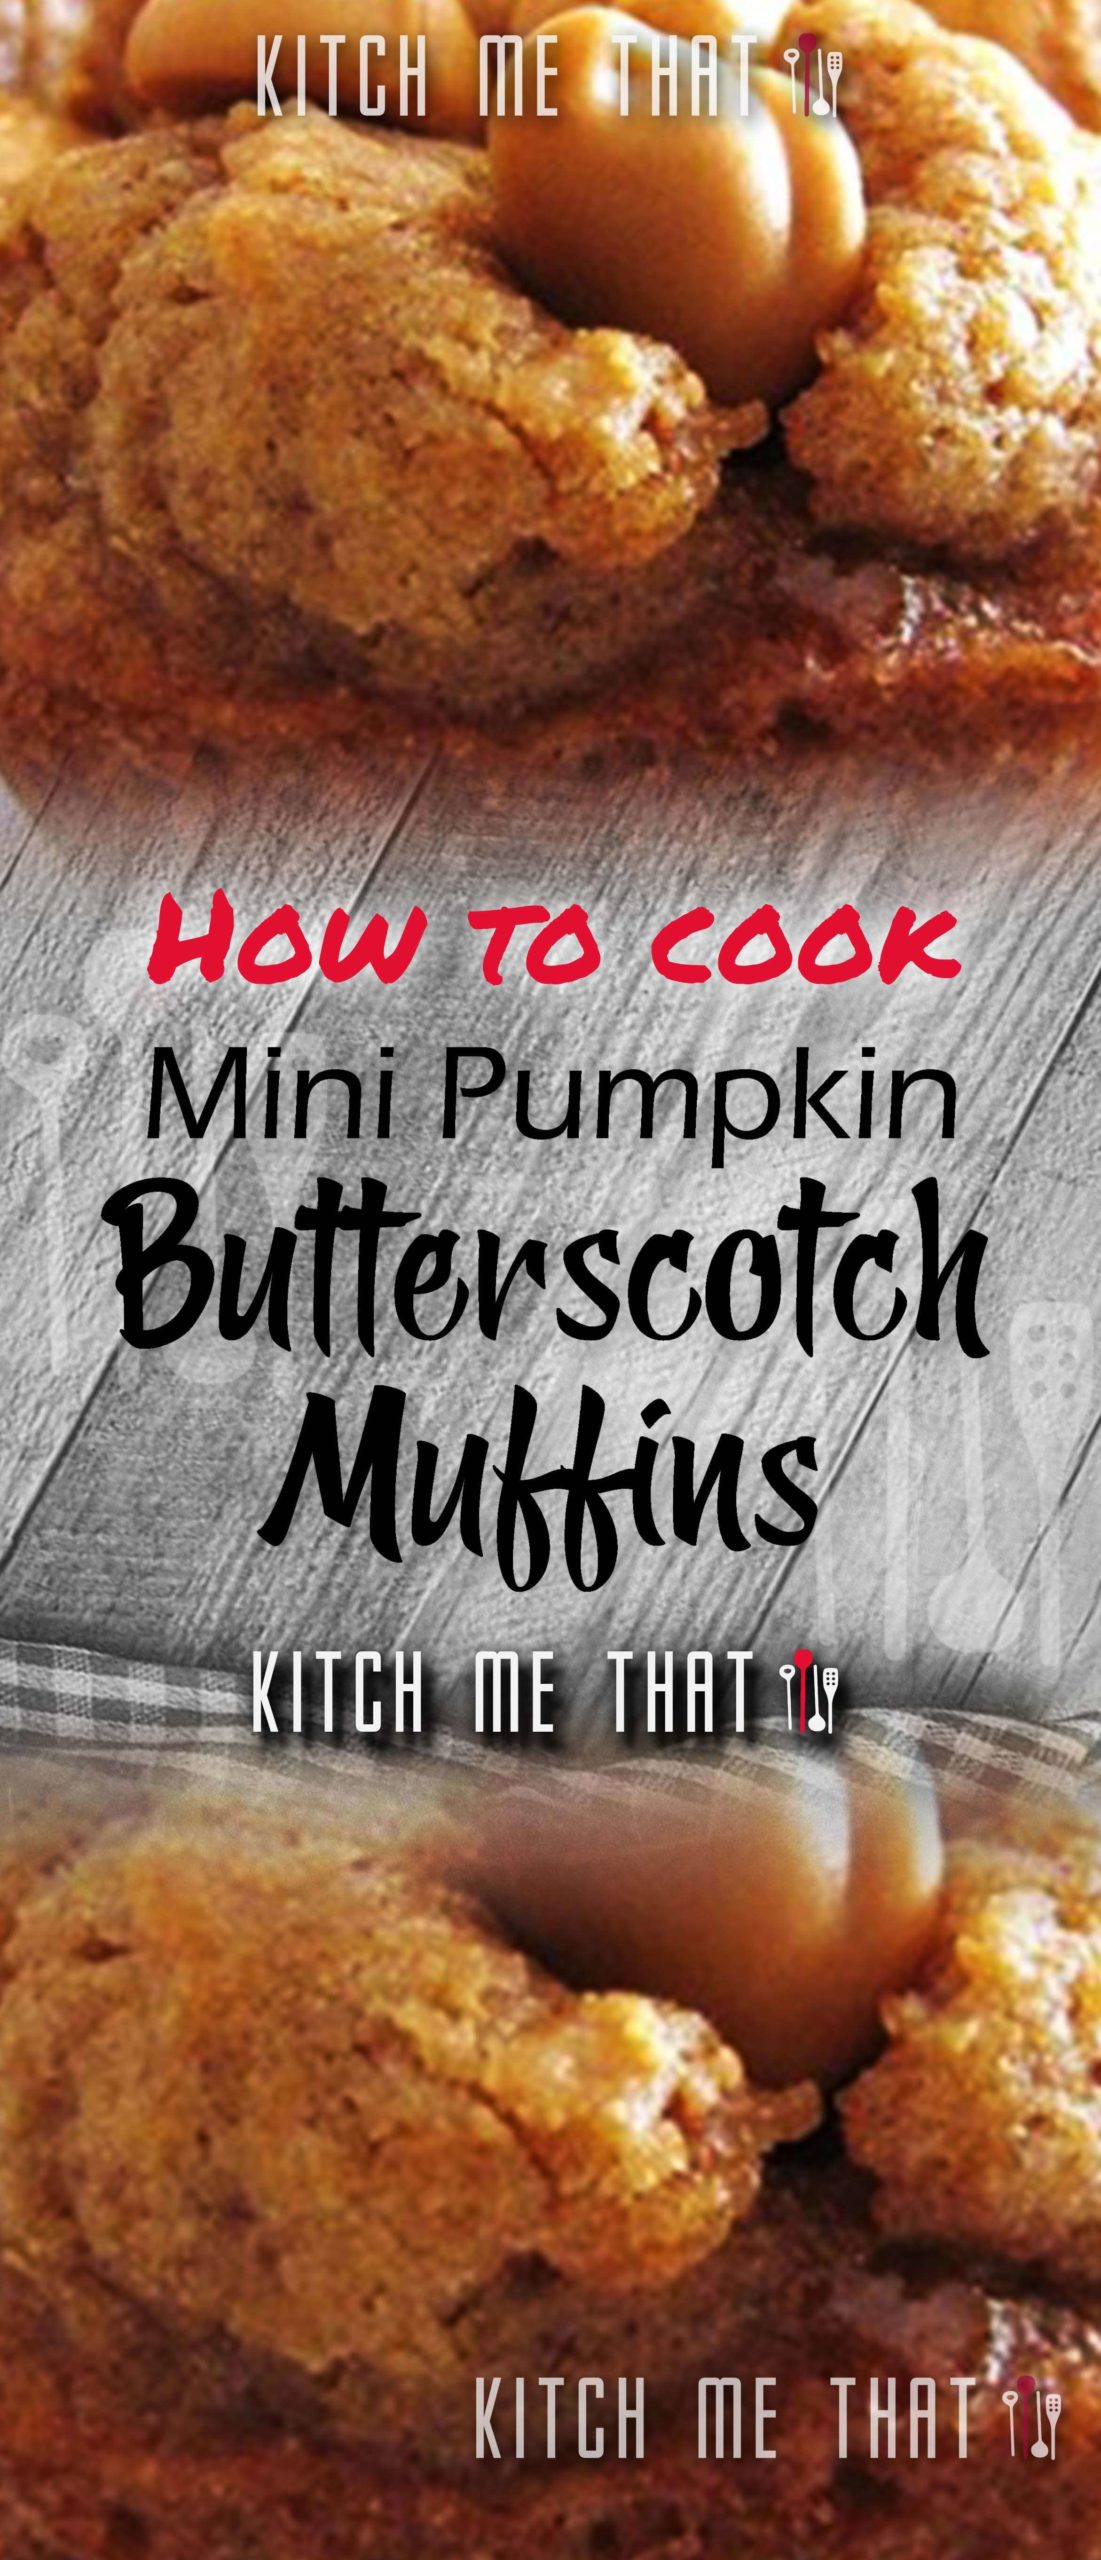 Mini Pumpkin Butterscotch Muffins